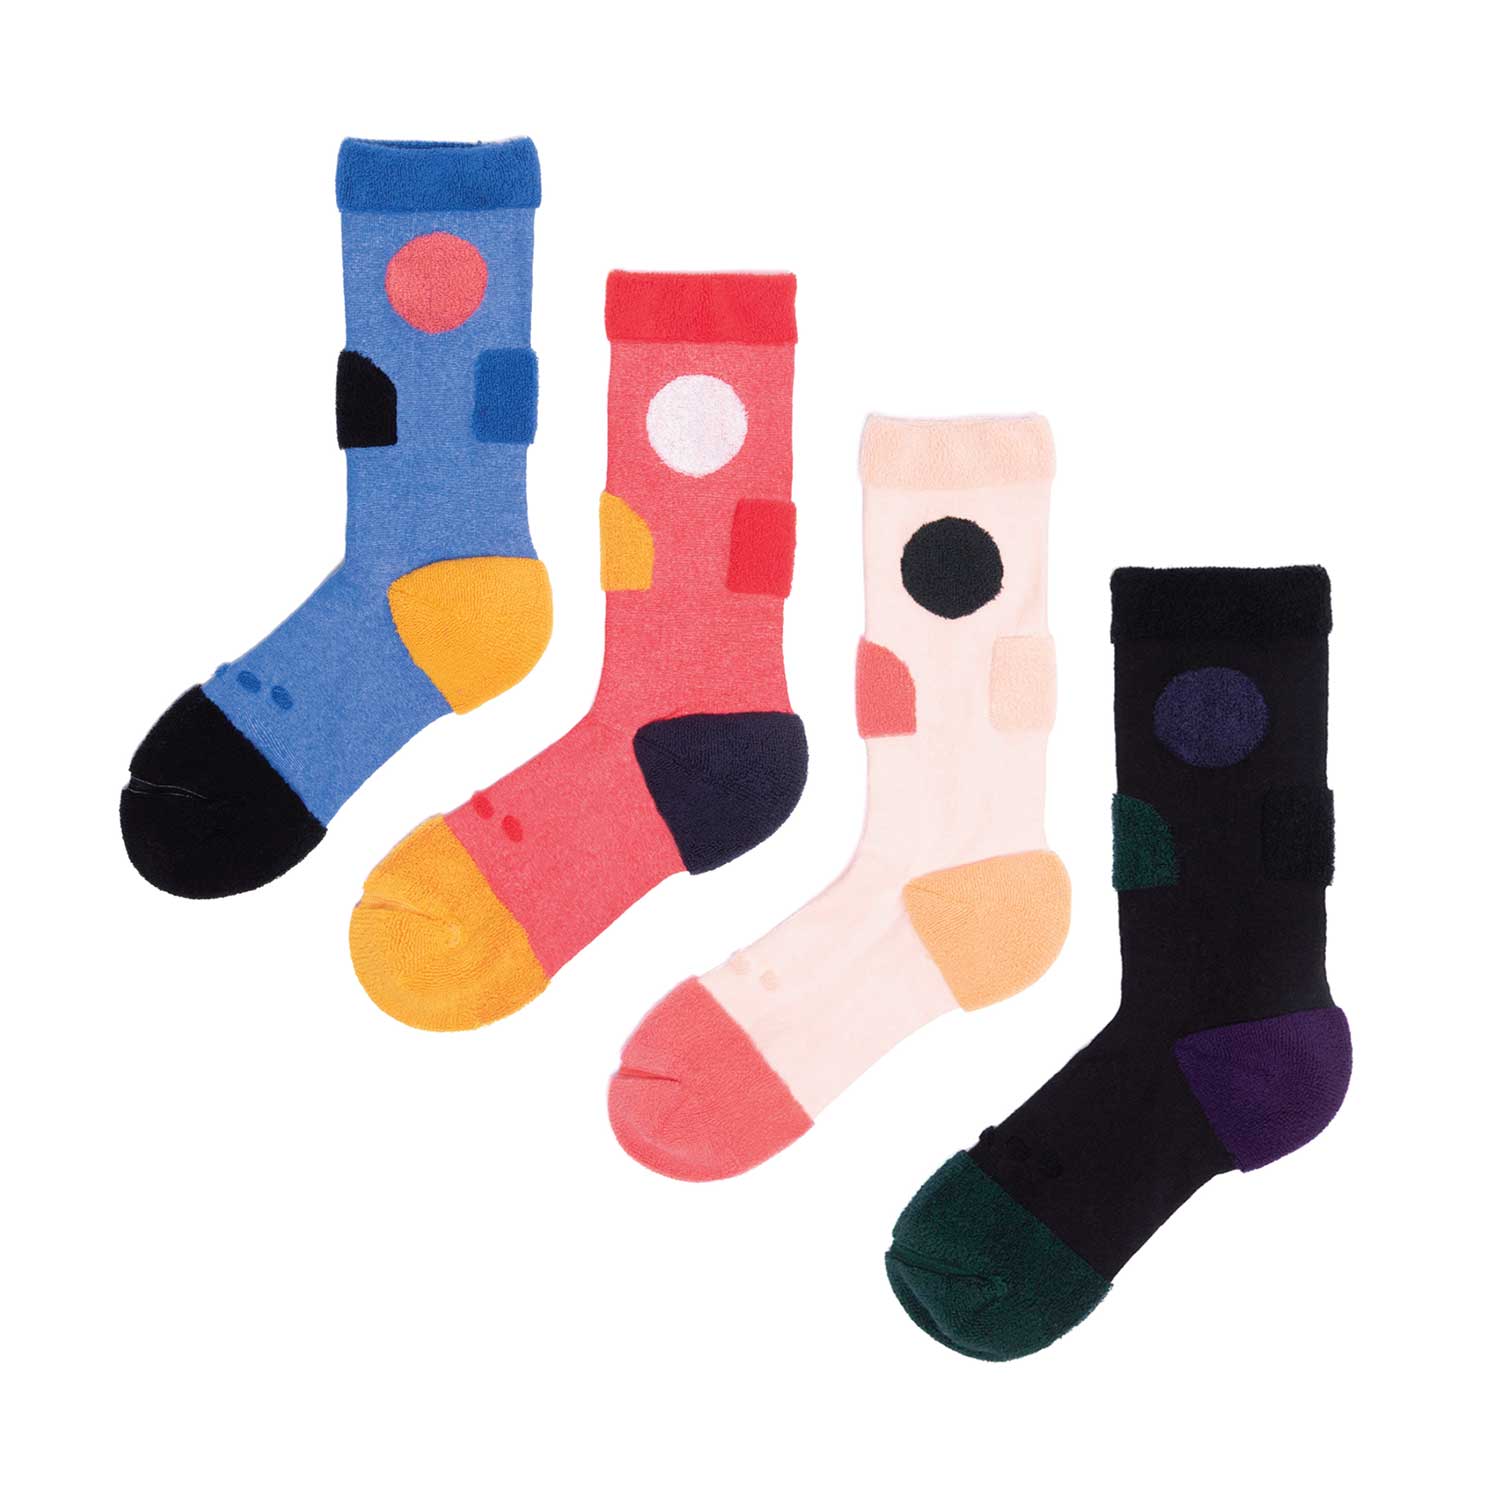 My Inner Beauty : JIWA | Reversible Patterned Socks